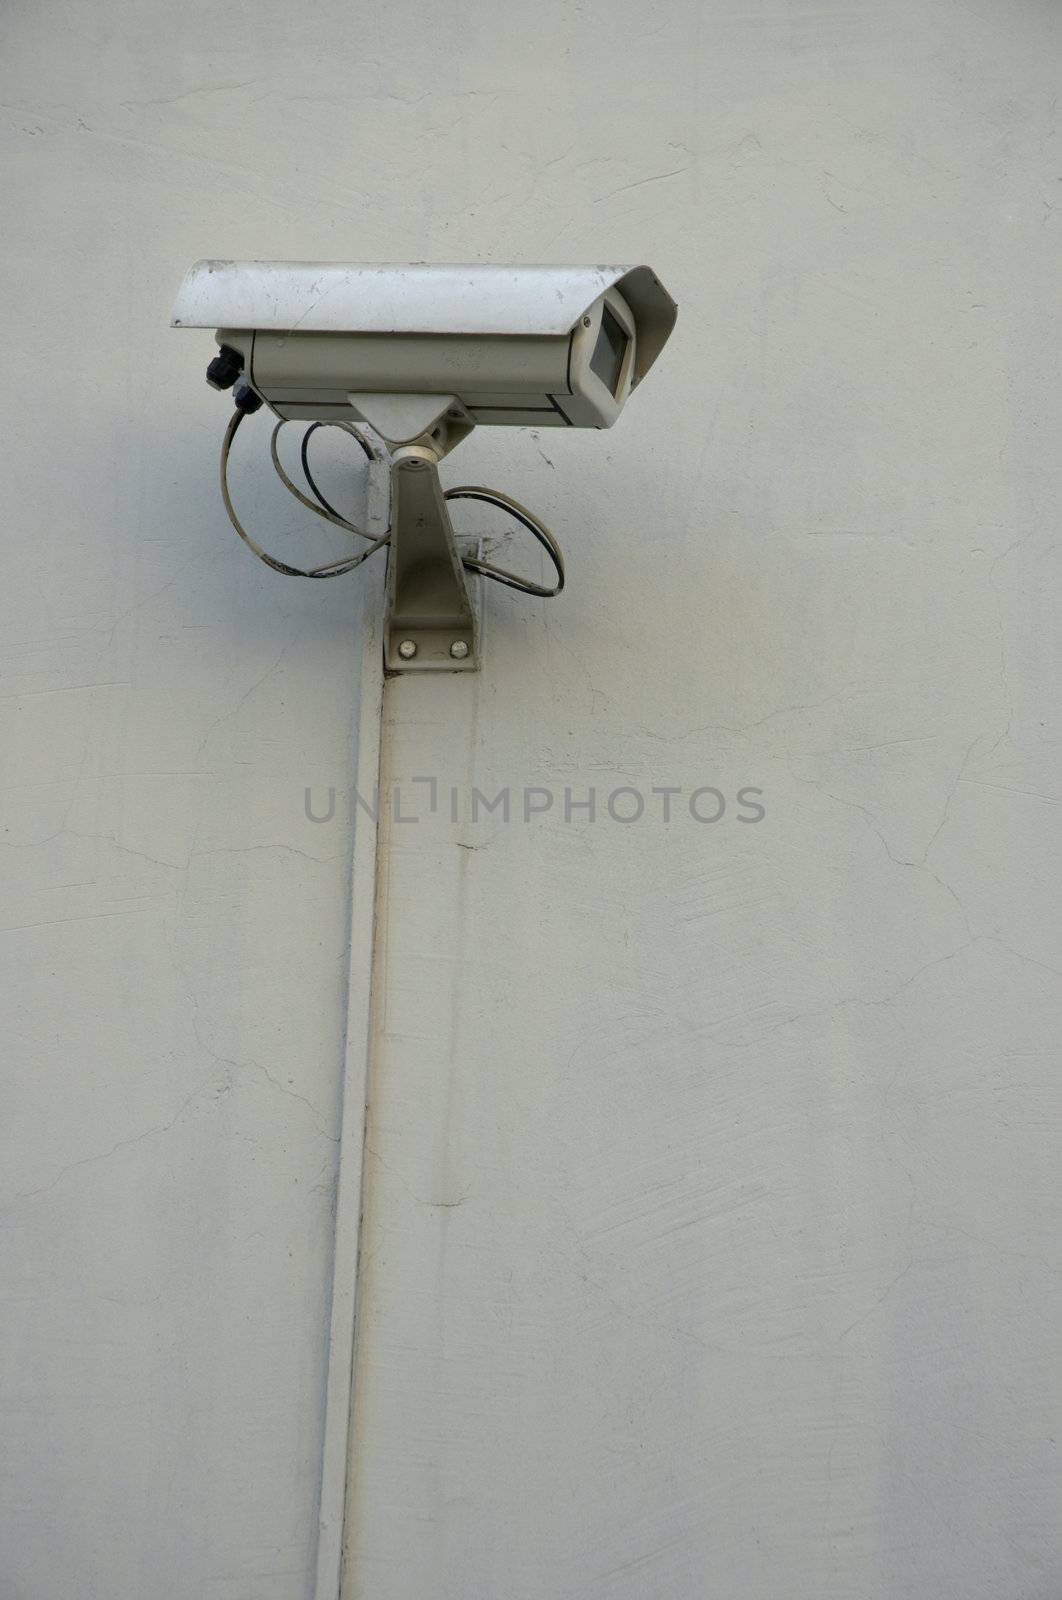 street monitoring camera by Kuzma